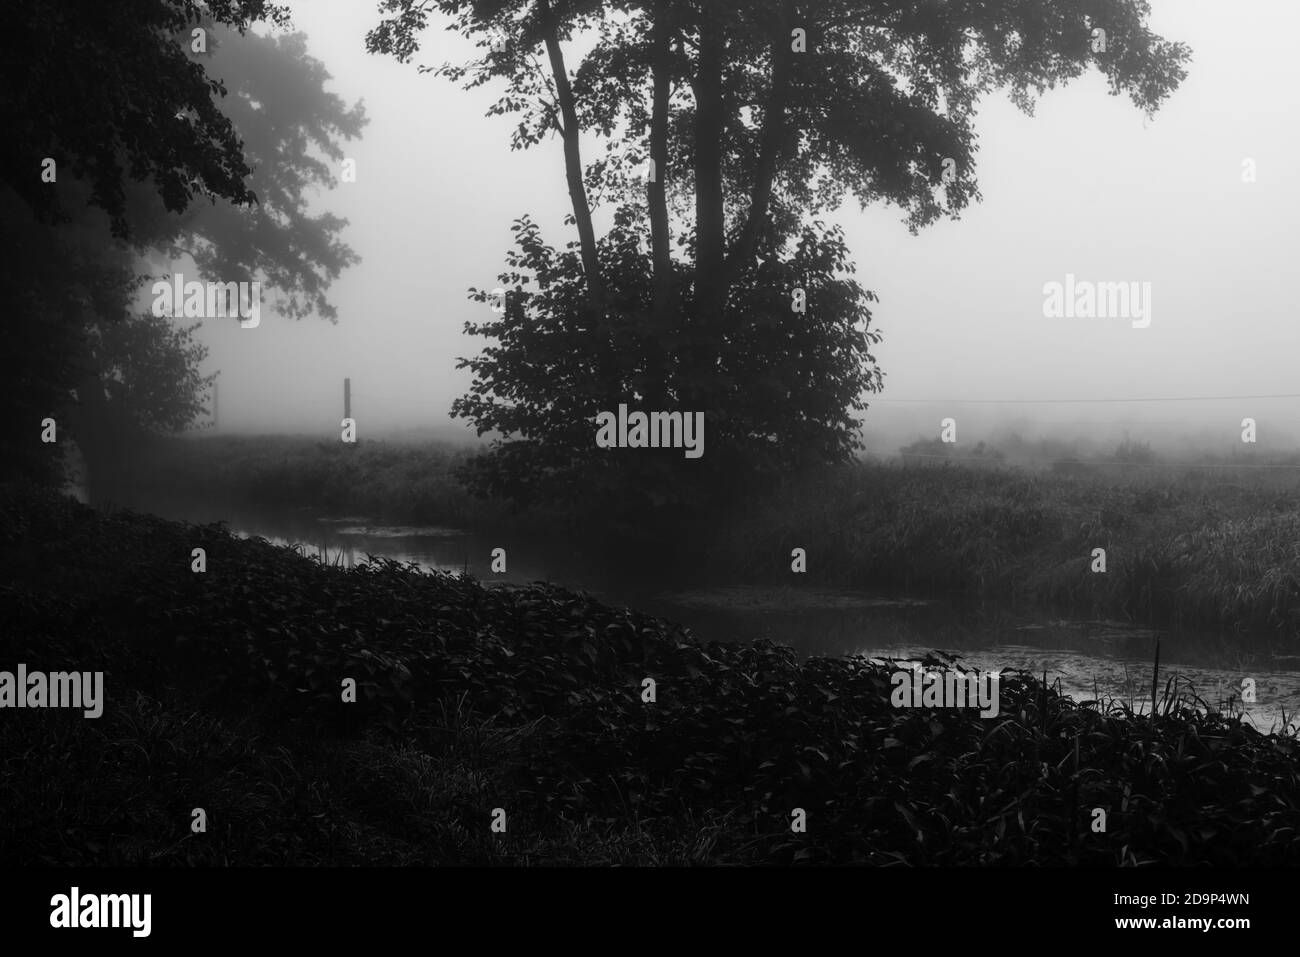 Brouillard épais en début de matinée en automne dans une petite rivière, netteté sélective, netteté au premier plan, noir/blanc Banque D'Images